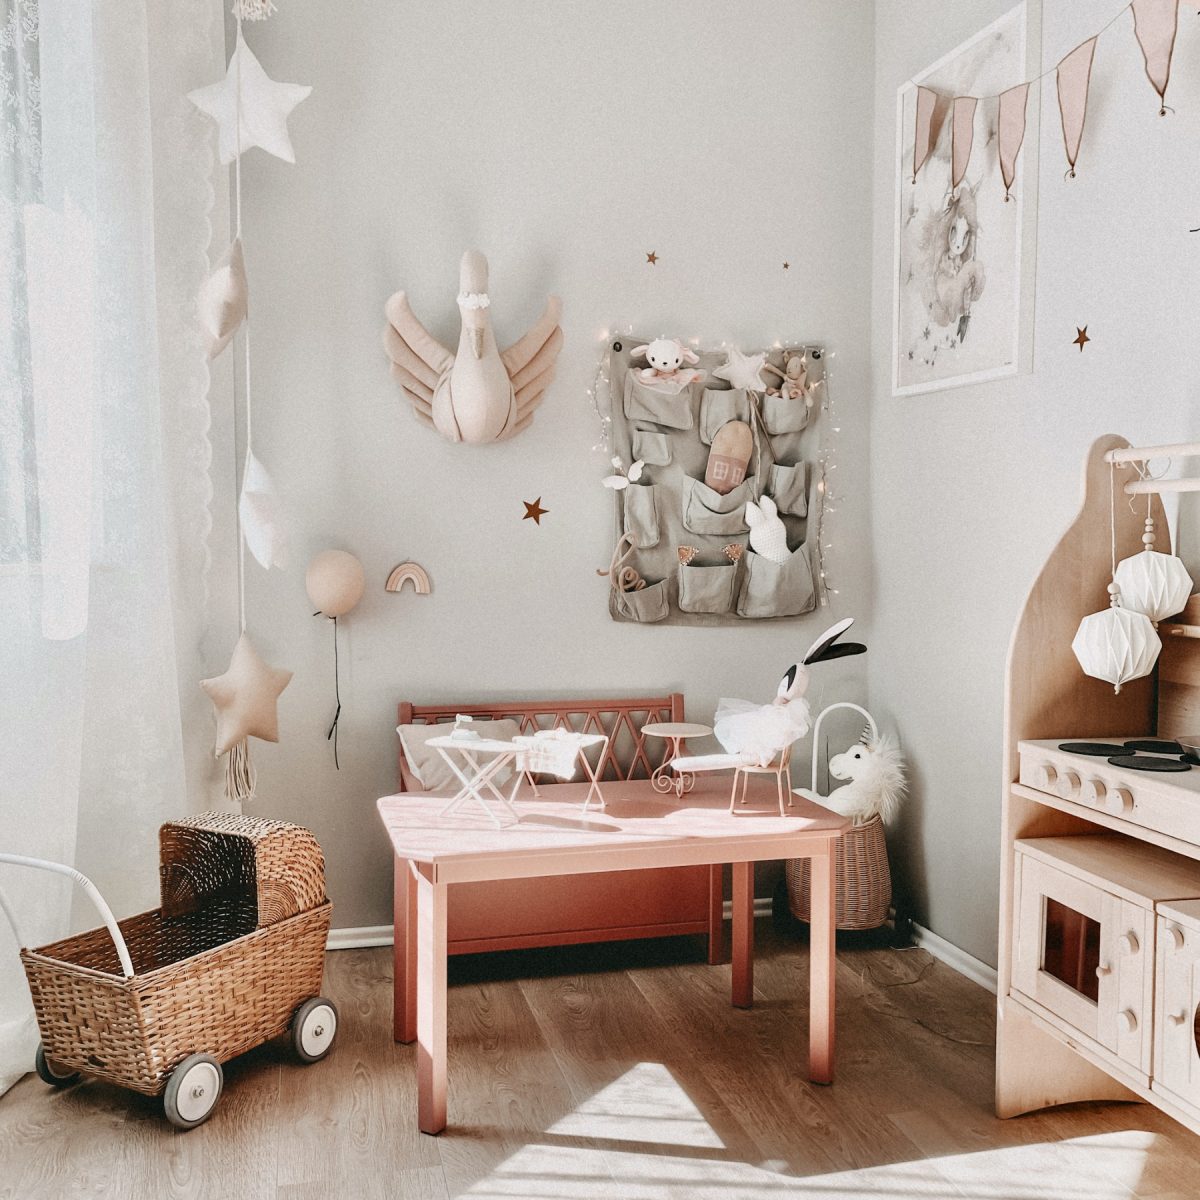 Fantasyroom Blog: Die schönsten Instagram Kinderzimmer - Spielecke im Mädchenzimmer